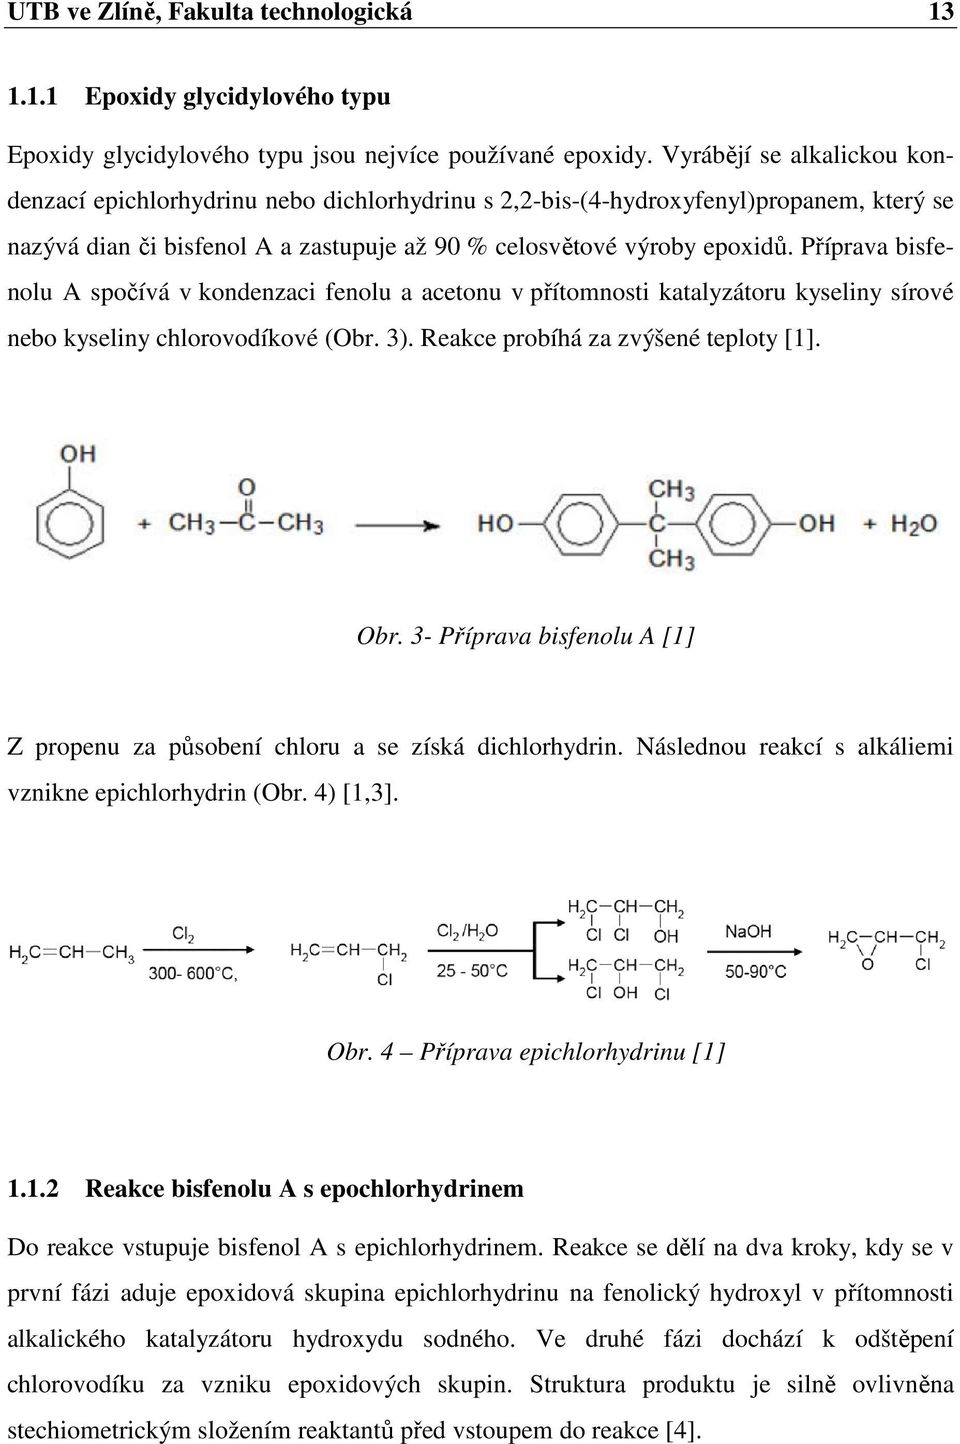 Příprava bisfenolu A spočívá v kondenzaci fenolu a acetonu v přítomnosti katalyzátoru kyseliny sírové nebo kyseliny chlorovodíkové (Obr. 3). Reakce probíhá za zvýšené teploty [1]. Obr.